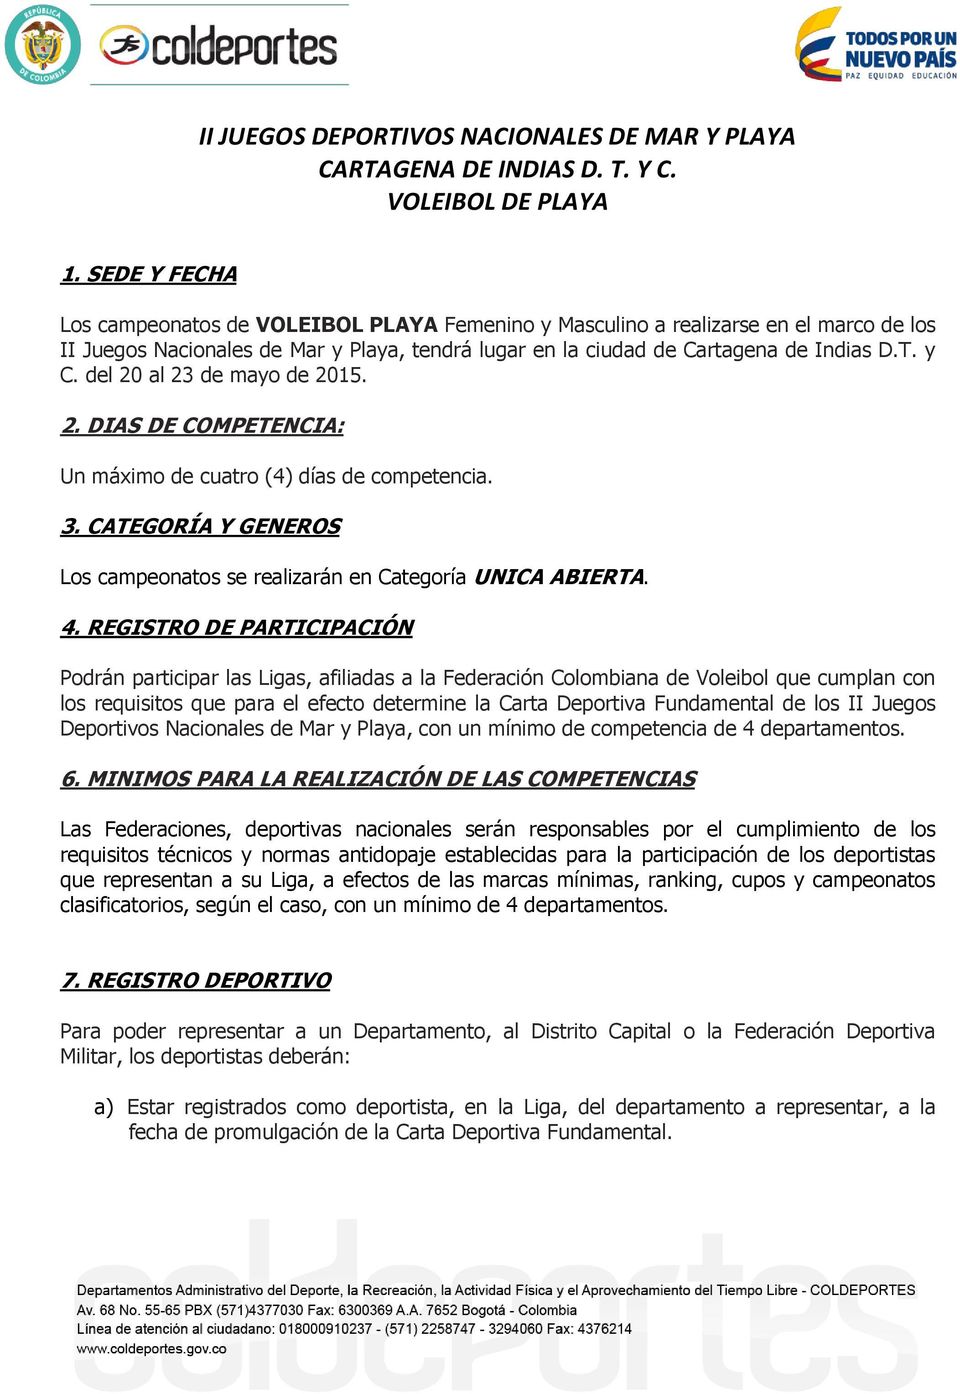 REGISTRO DE PARTICIPACIÓN Podrán participar las Ligas, afiliadas a la Federación Colombiana de Voleibol que cumplan con los requisitos que para el efecto determine la Carta Deportiva Fundamental de